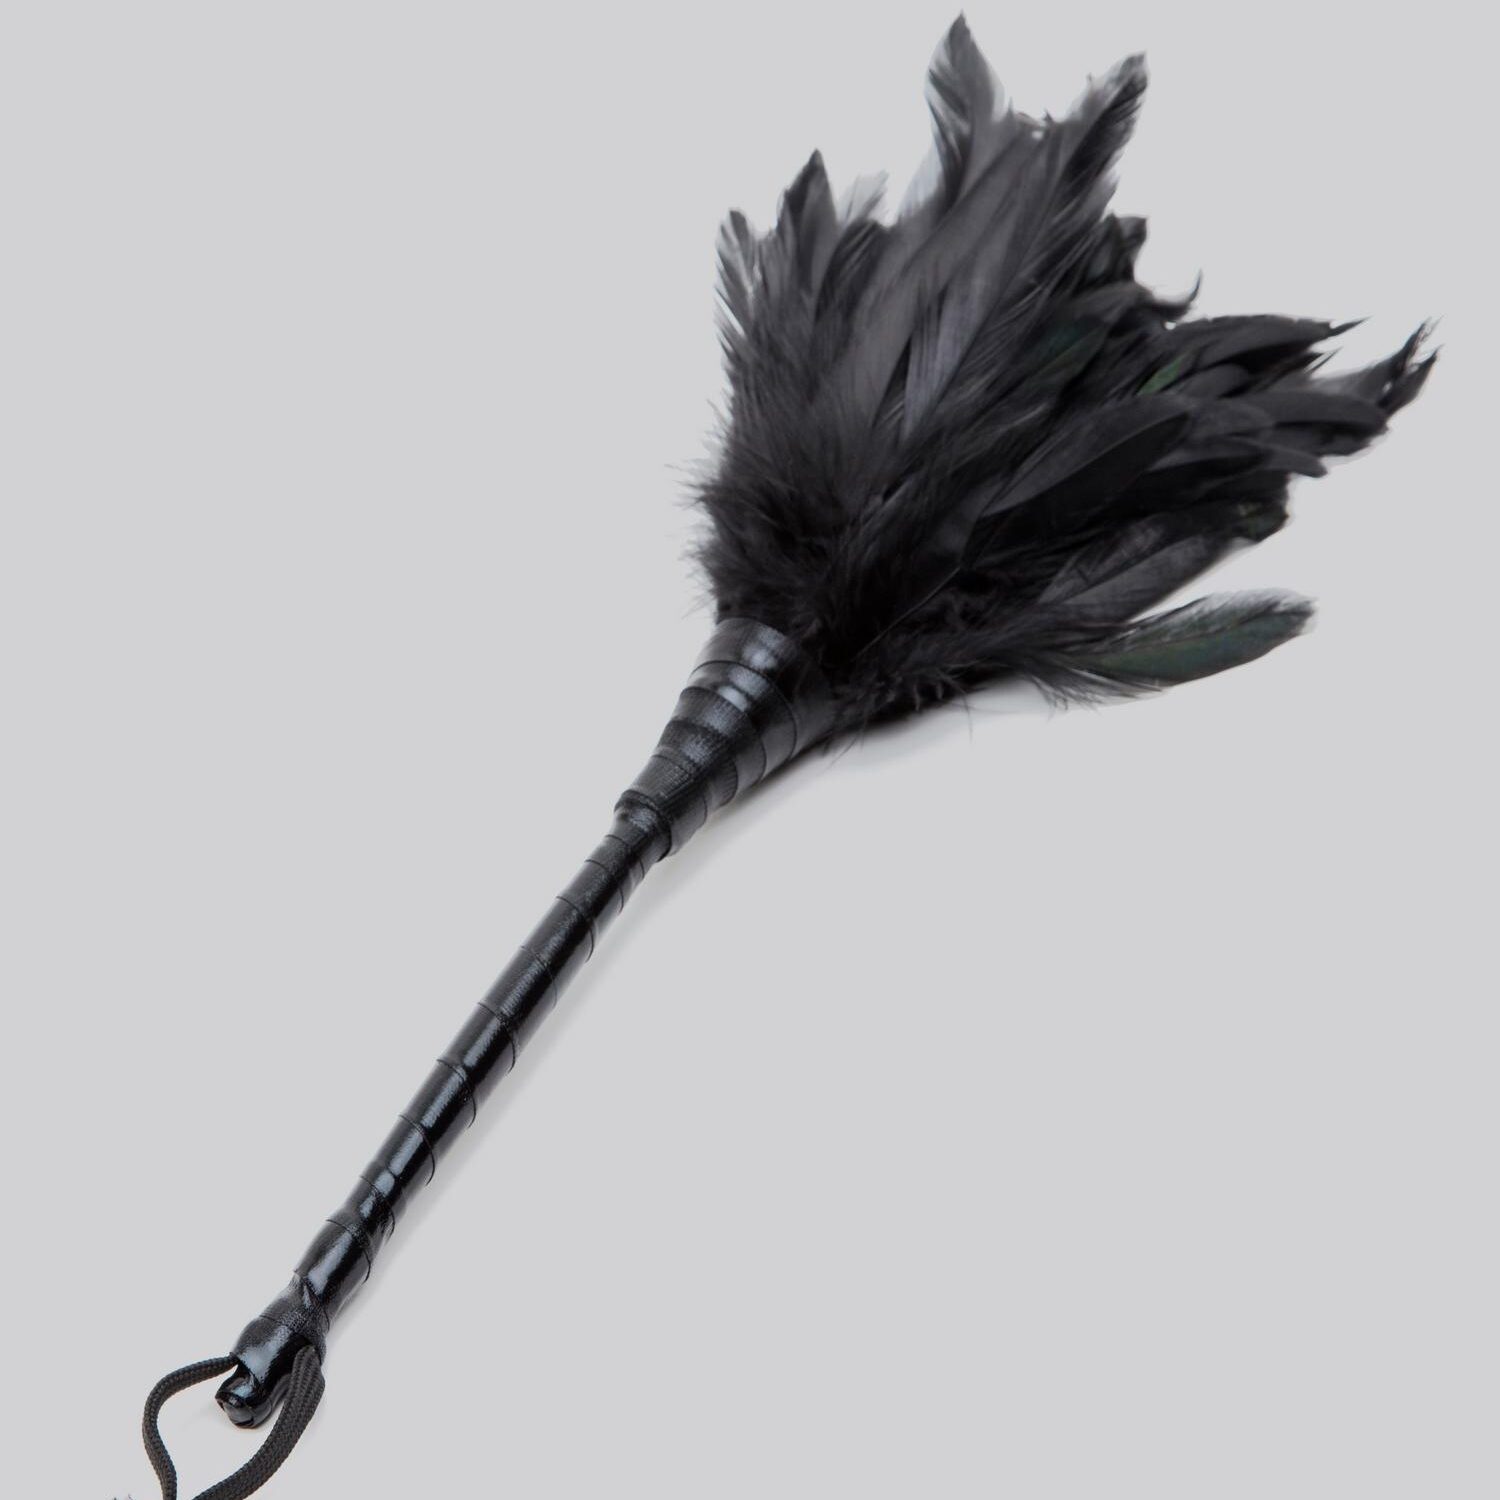 Fetish Fantasy Frisky Black Feather Tickler is a type of BDSM toy.